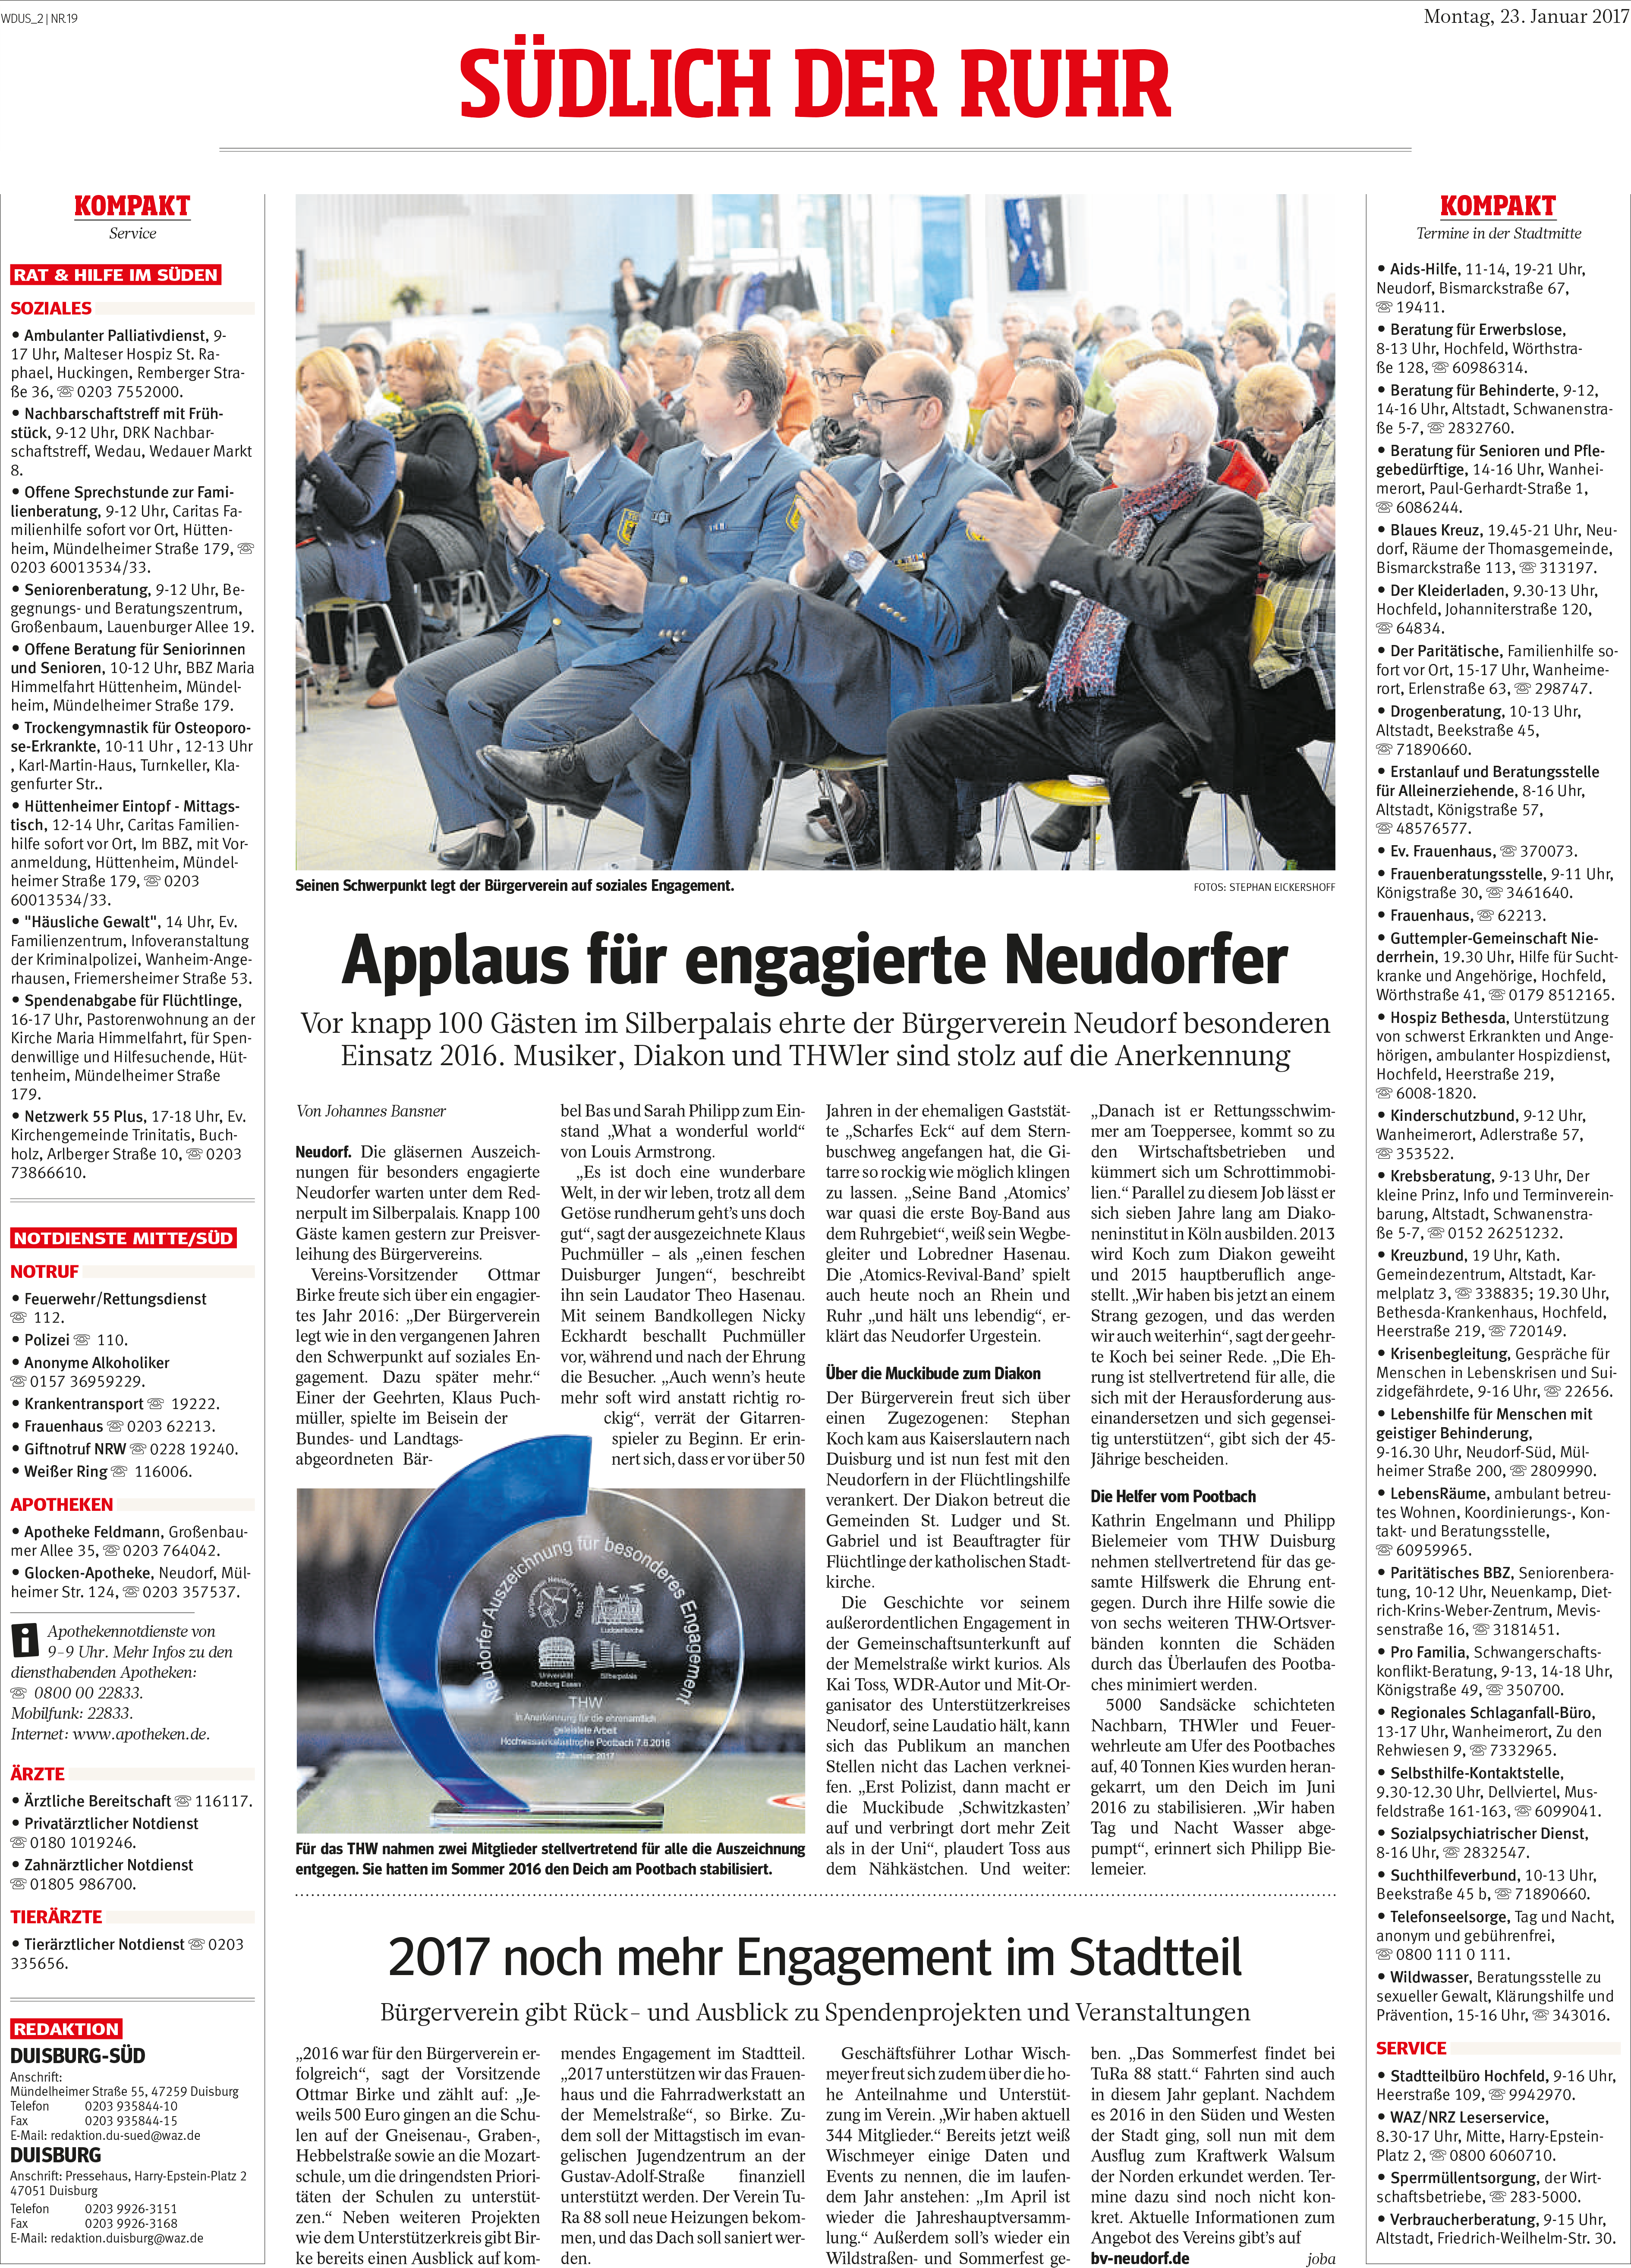 Zeitungsartikel zu Klaus Puchmüller's Ehrenbürgerschaft in Duisburg